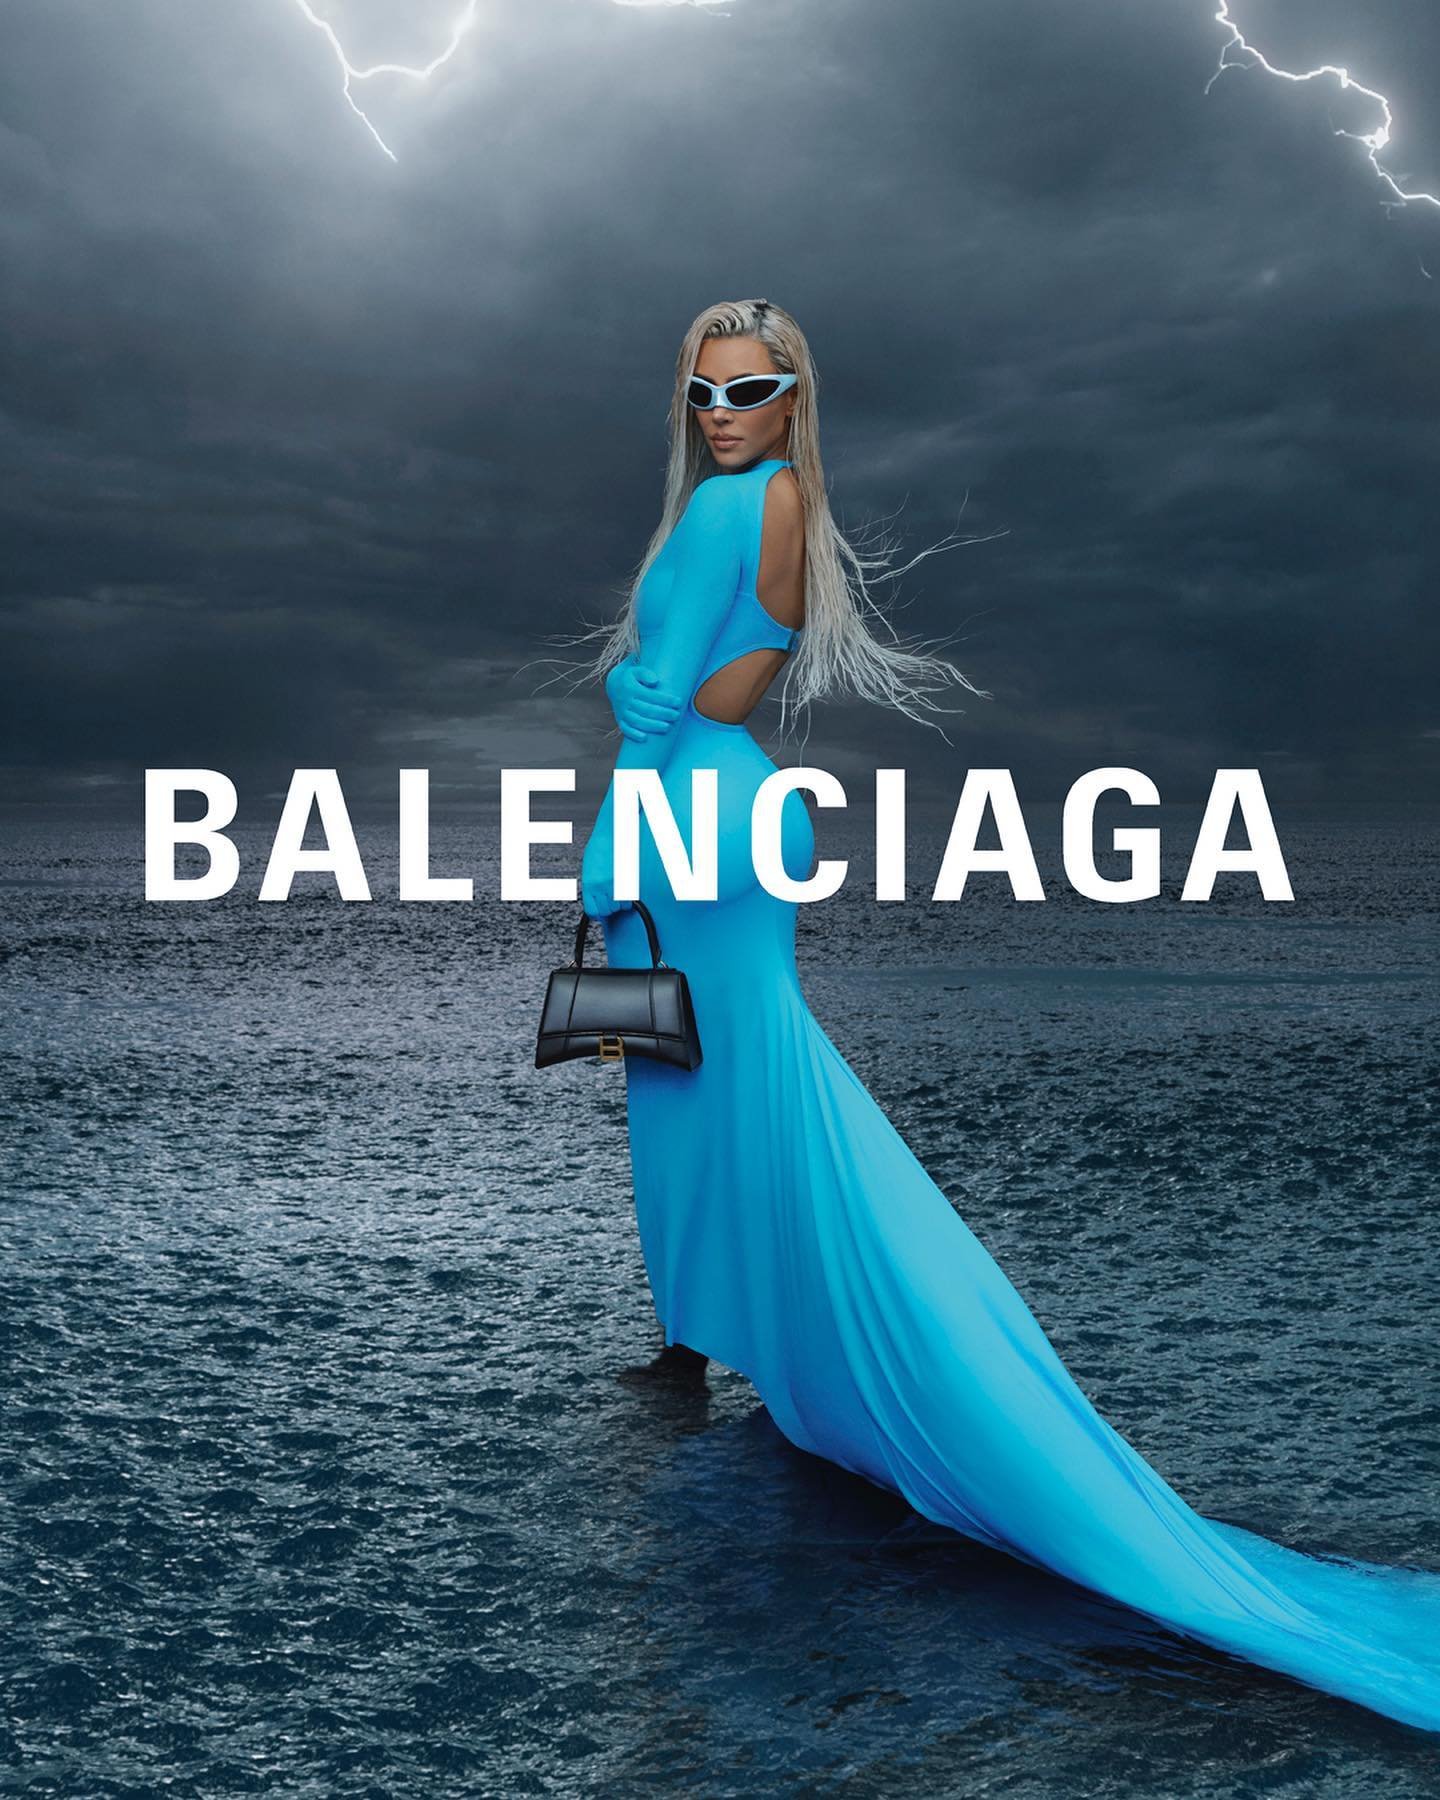 Balenciaga-Winter-2022-Campaign-by-Daniel-Roche (11).jpg